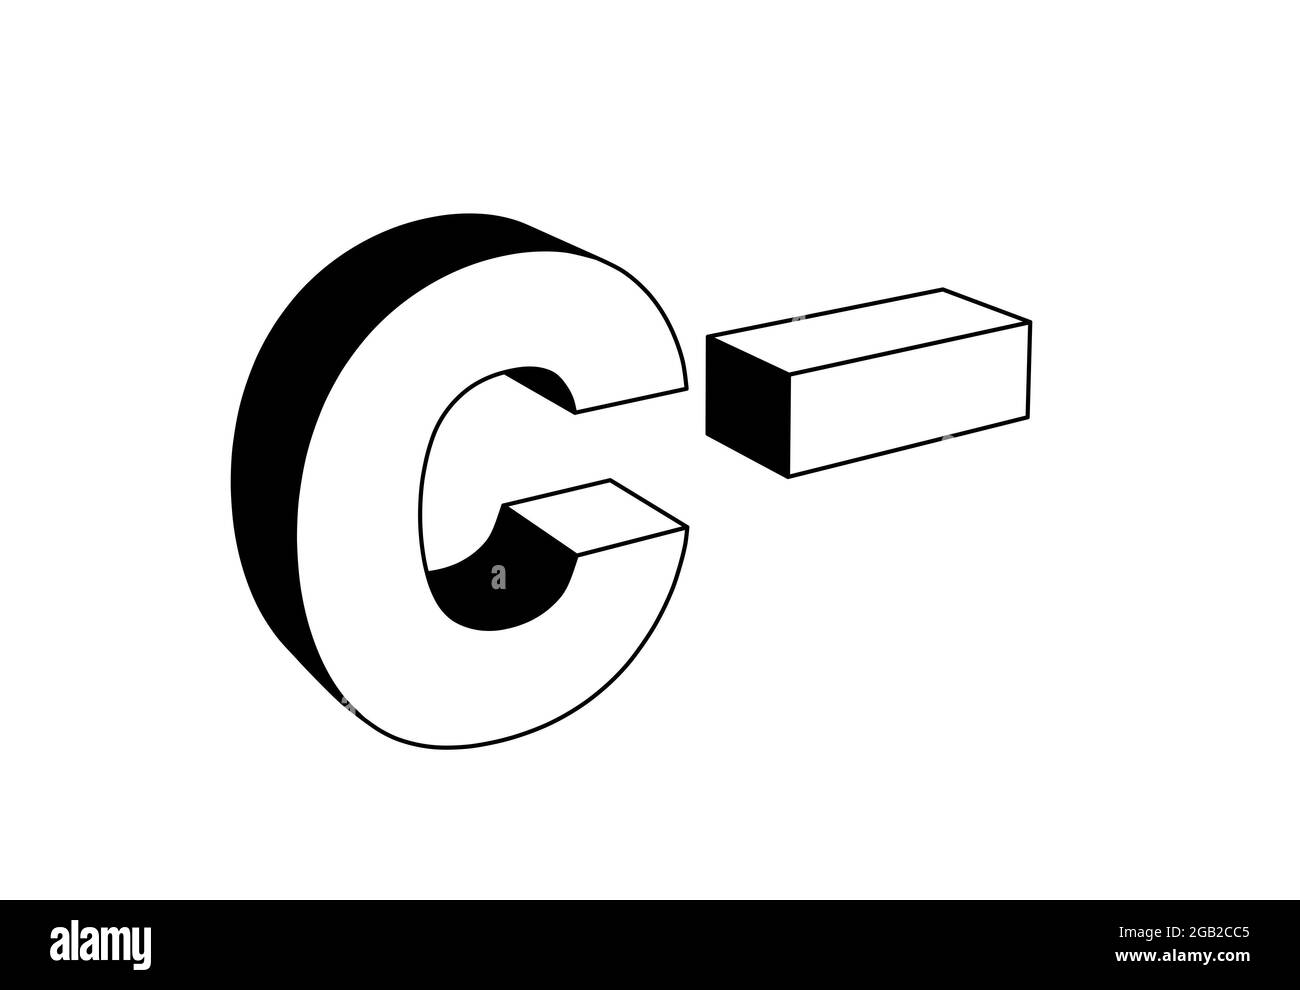 lettera c meno, illustrazione dei caratteri 3d in bianco e nero isolata in bianco, vista prospettica Foto Stock